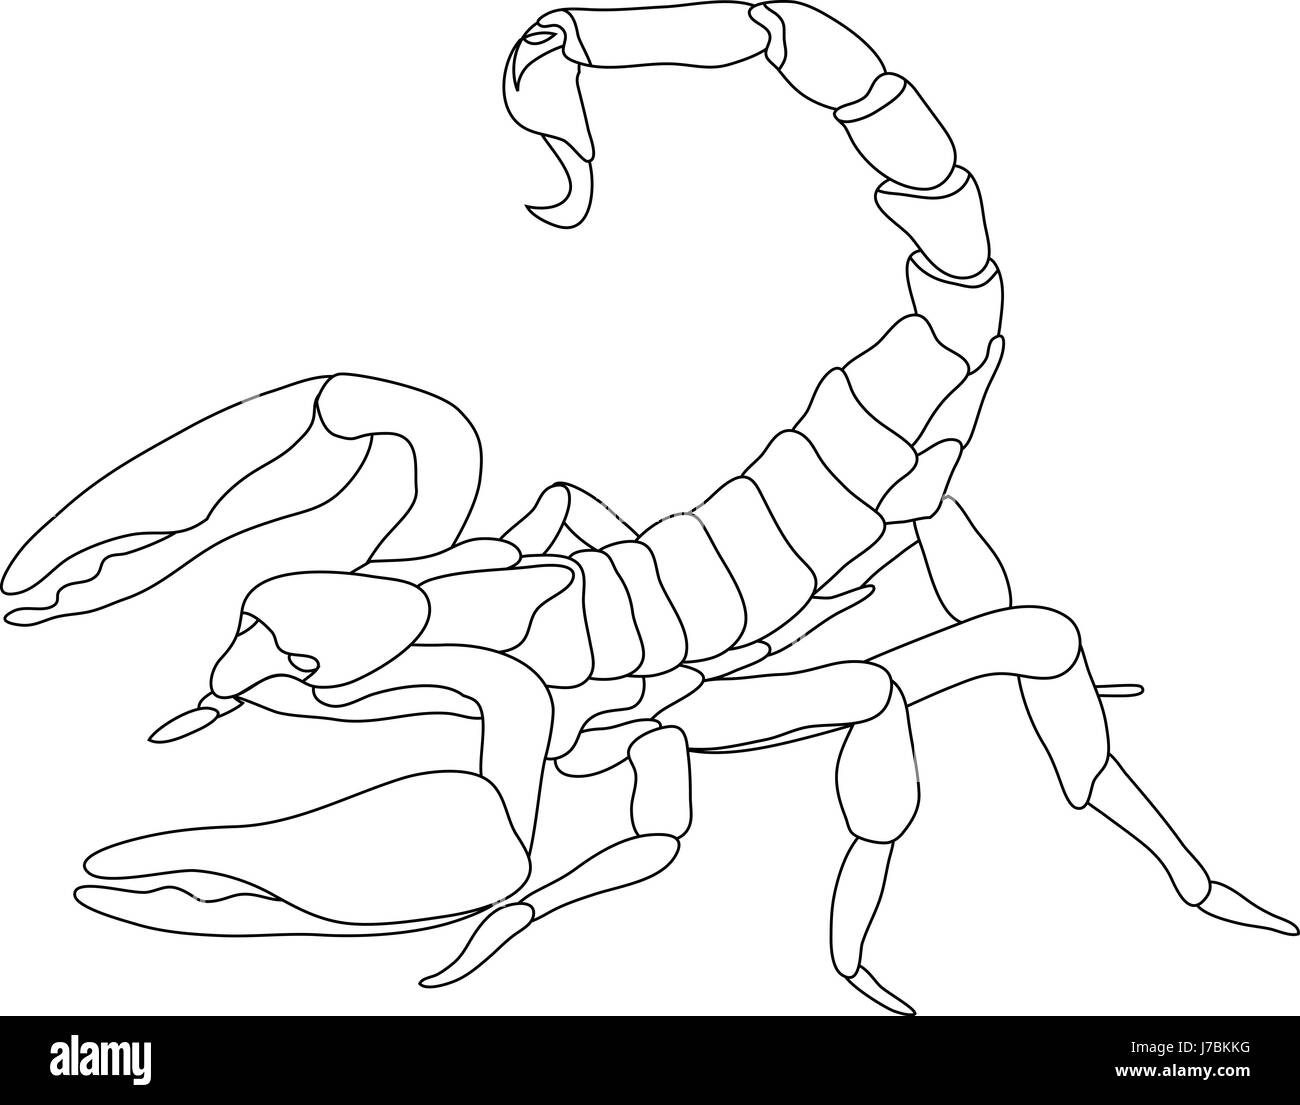 Рисунки на тему: Скорпион